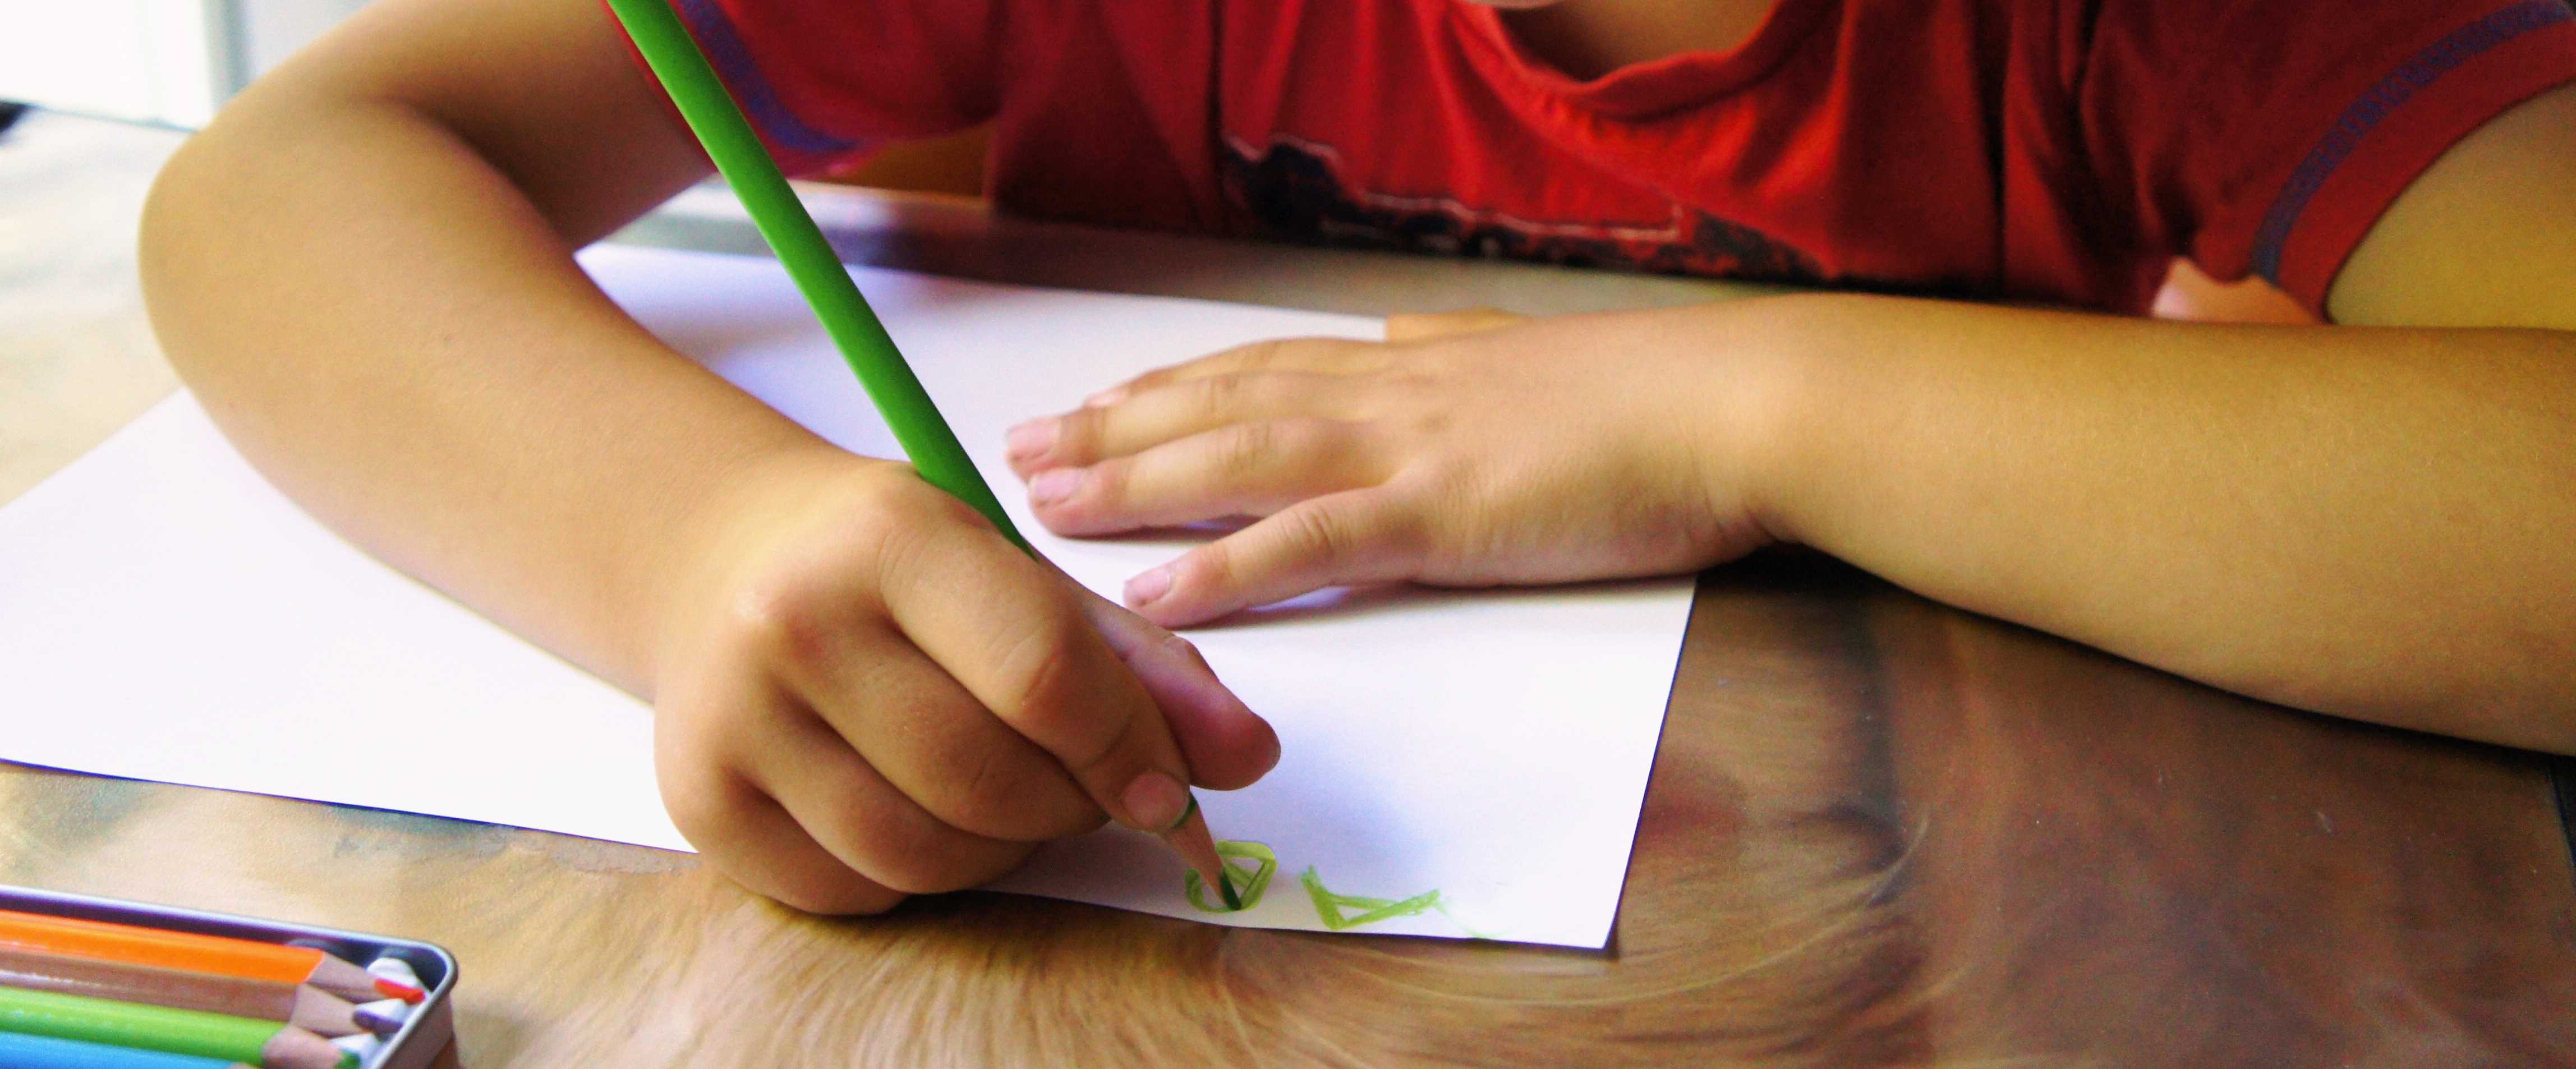 Bild: Ein Schulkind sitzt am Tisch und schreibt